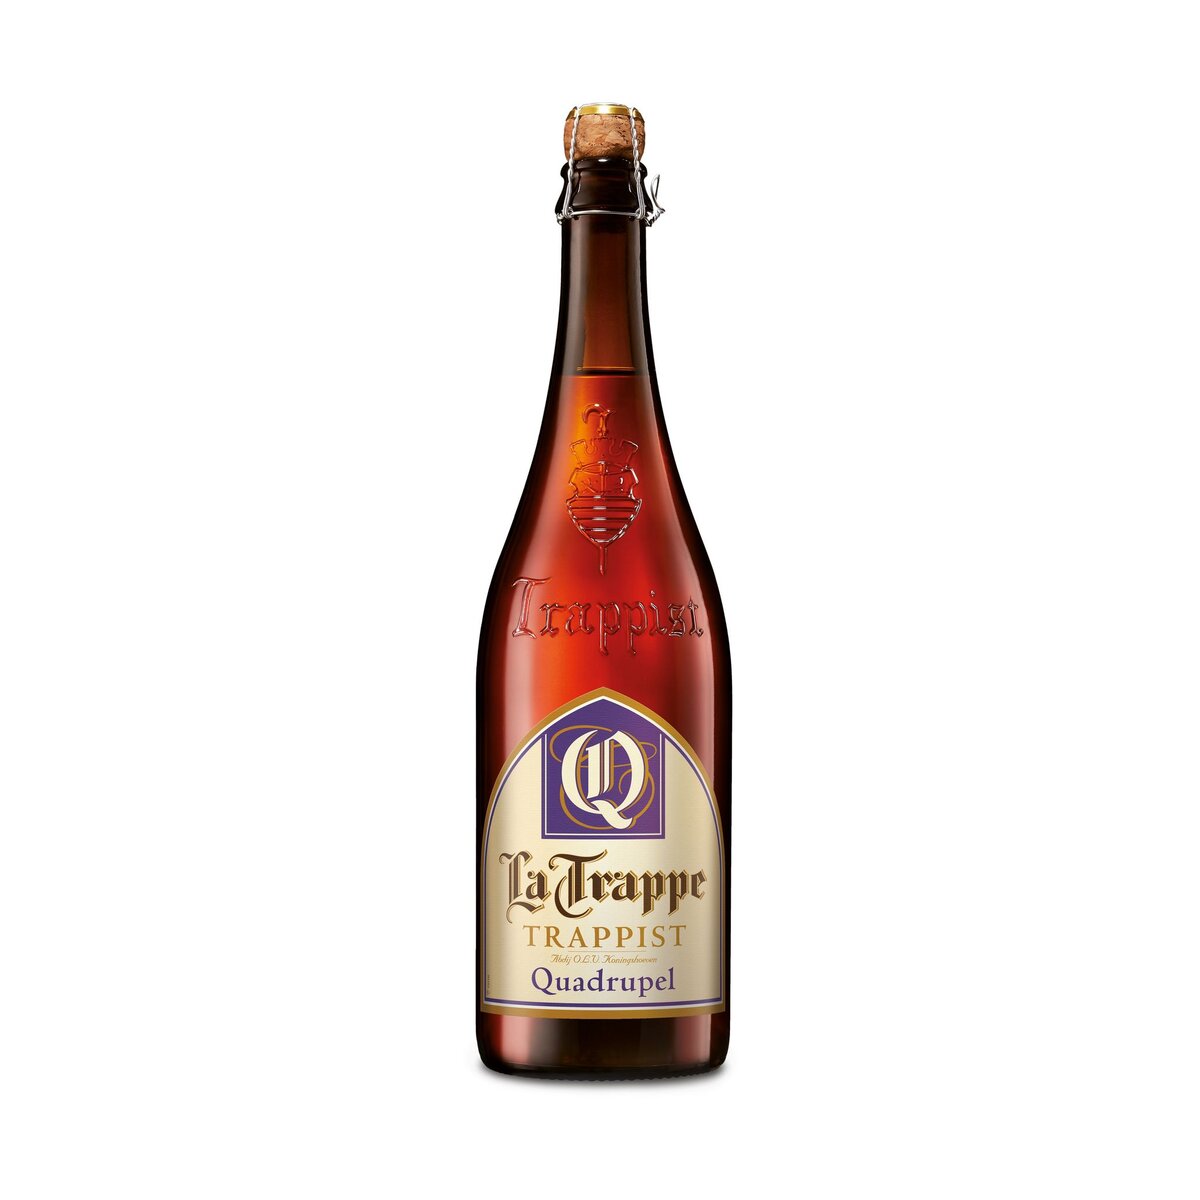 LA TRAPPE Bière blonde trappiste Quadrupel 10% 75cl